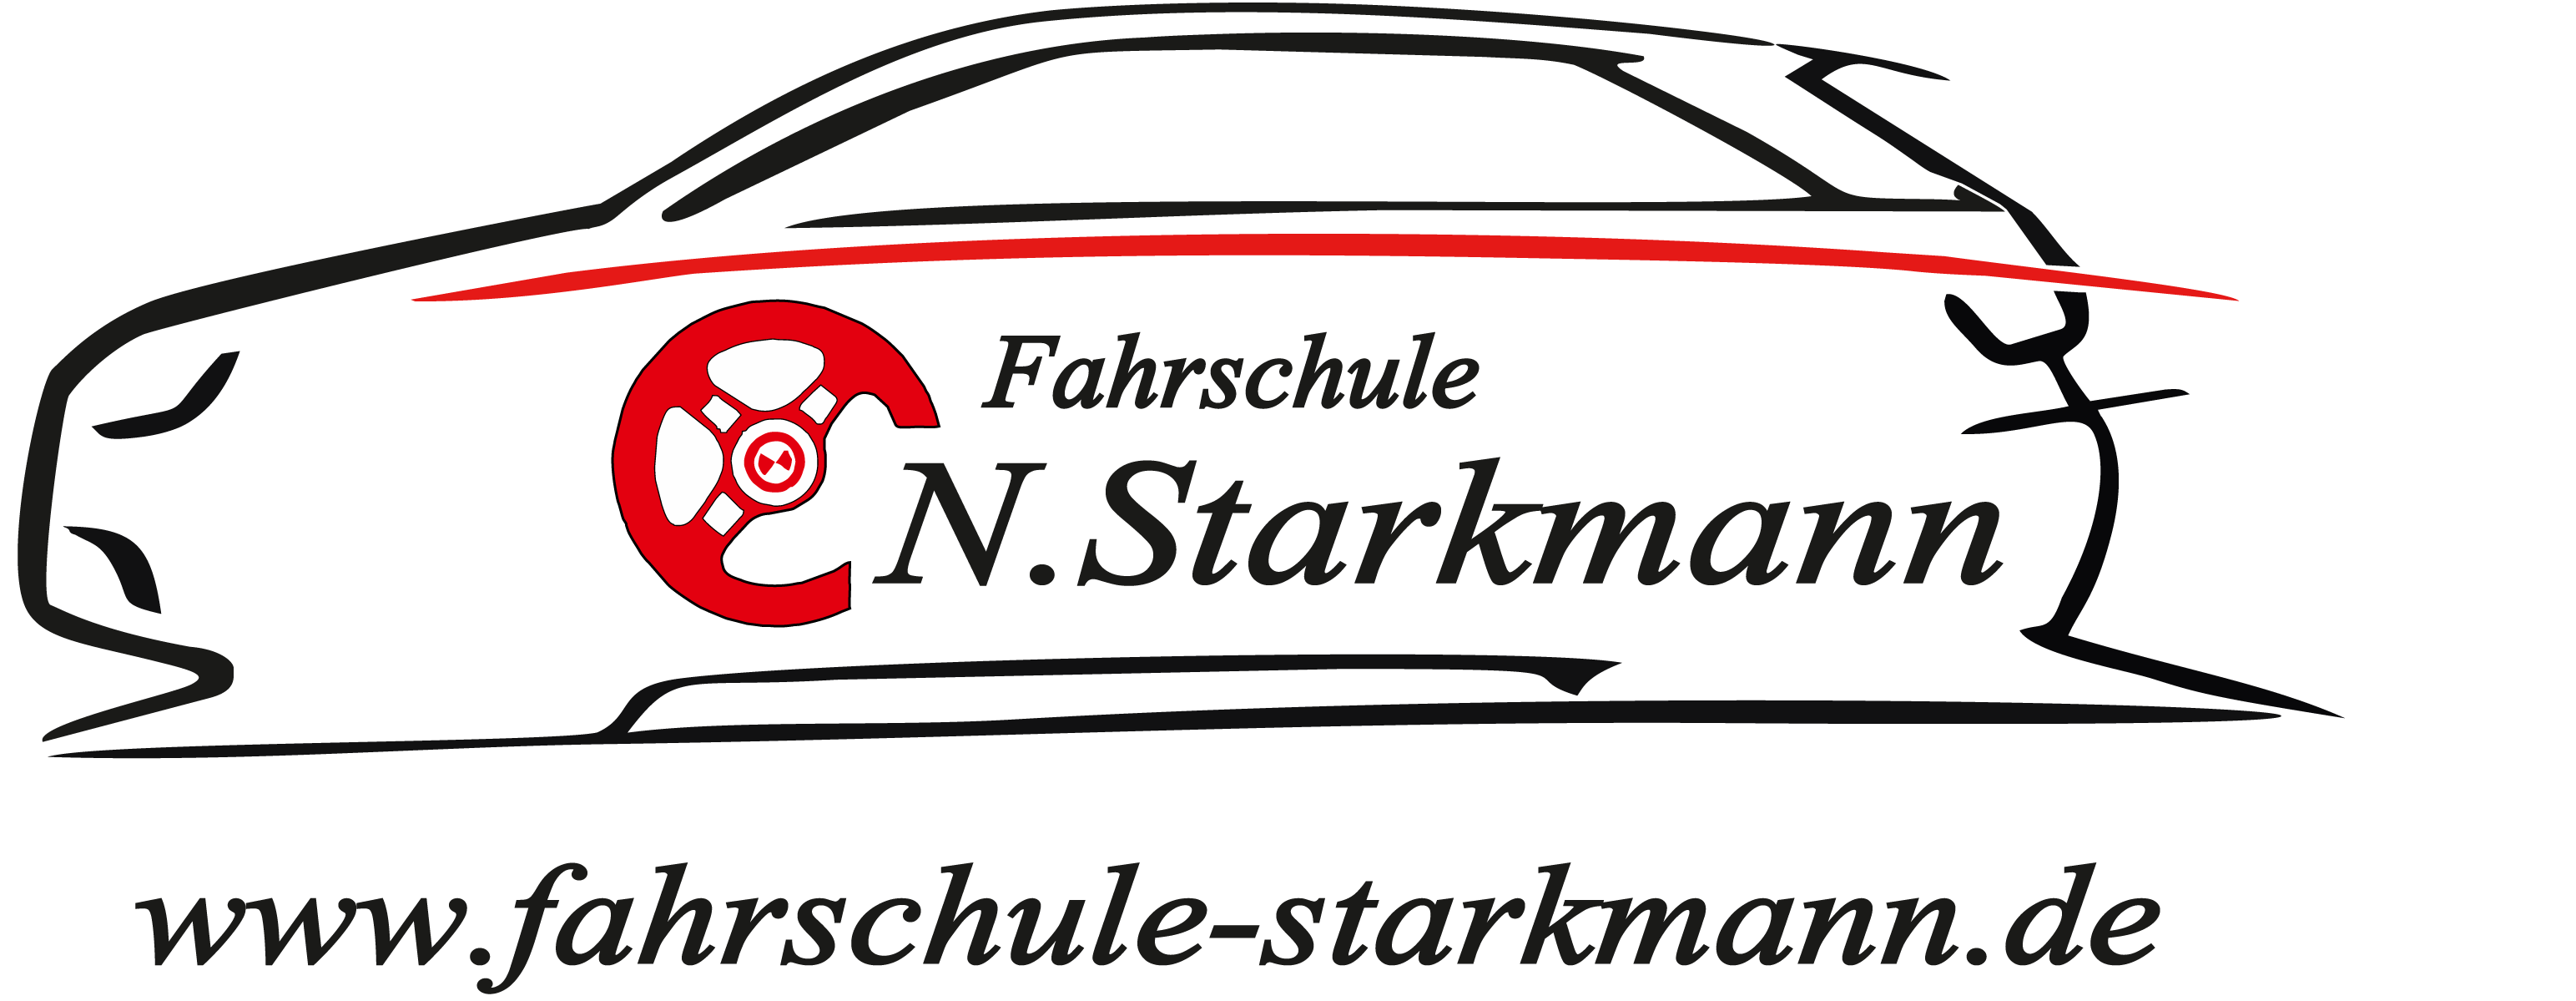 Fahrschule Starkmann